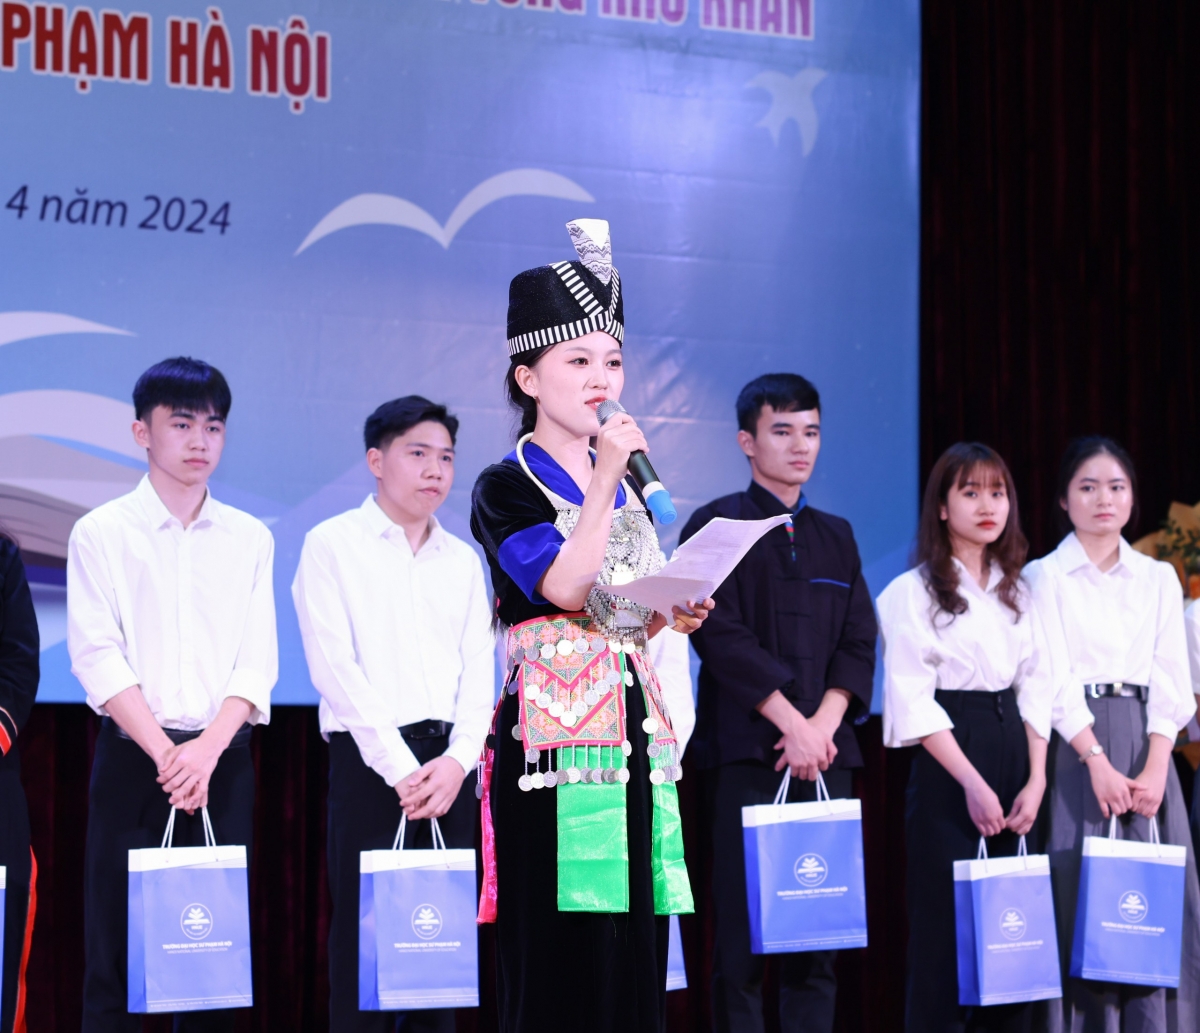 Em Xồng Vi Va, sinh viên người Mông đến từ vùng cao tỉnh Nghệ An chia sẻ về hành trình hòa nhập với cuộc sống, học tập mới khi rời quê về Hà Nội.